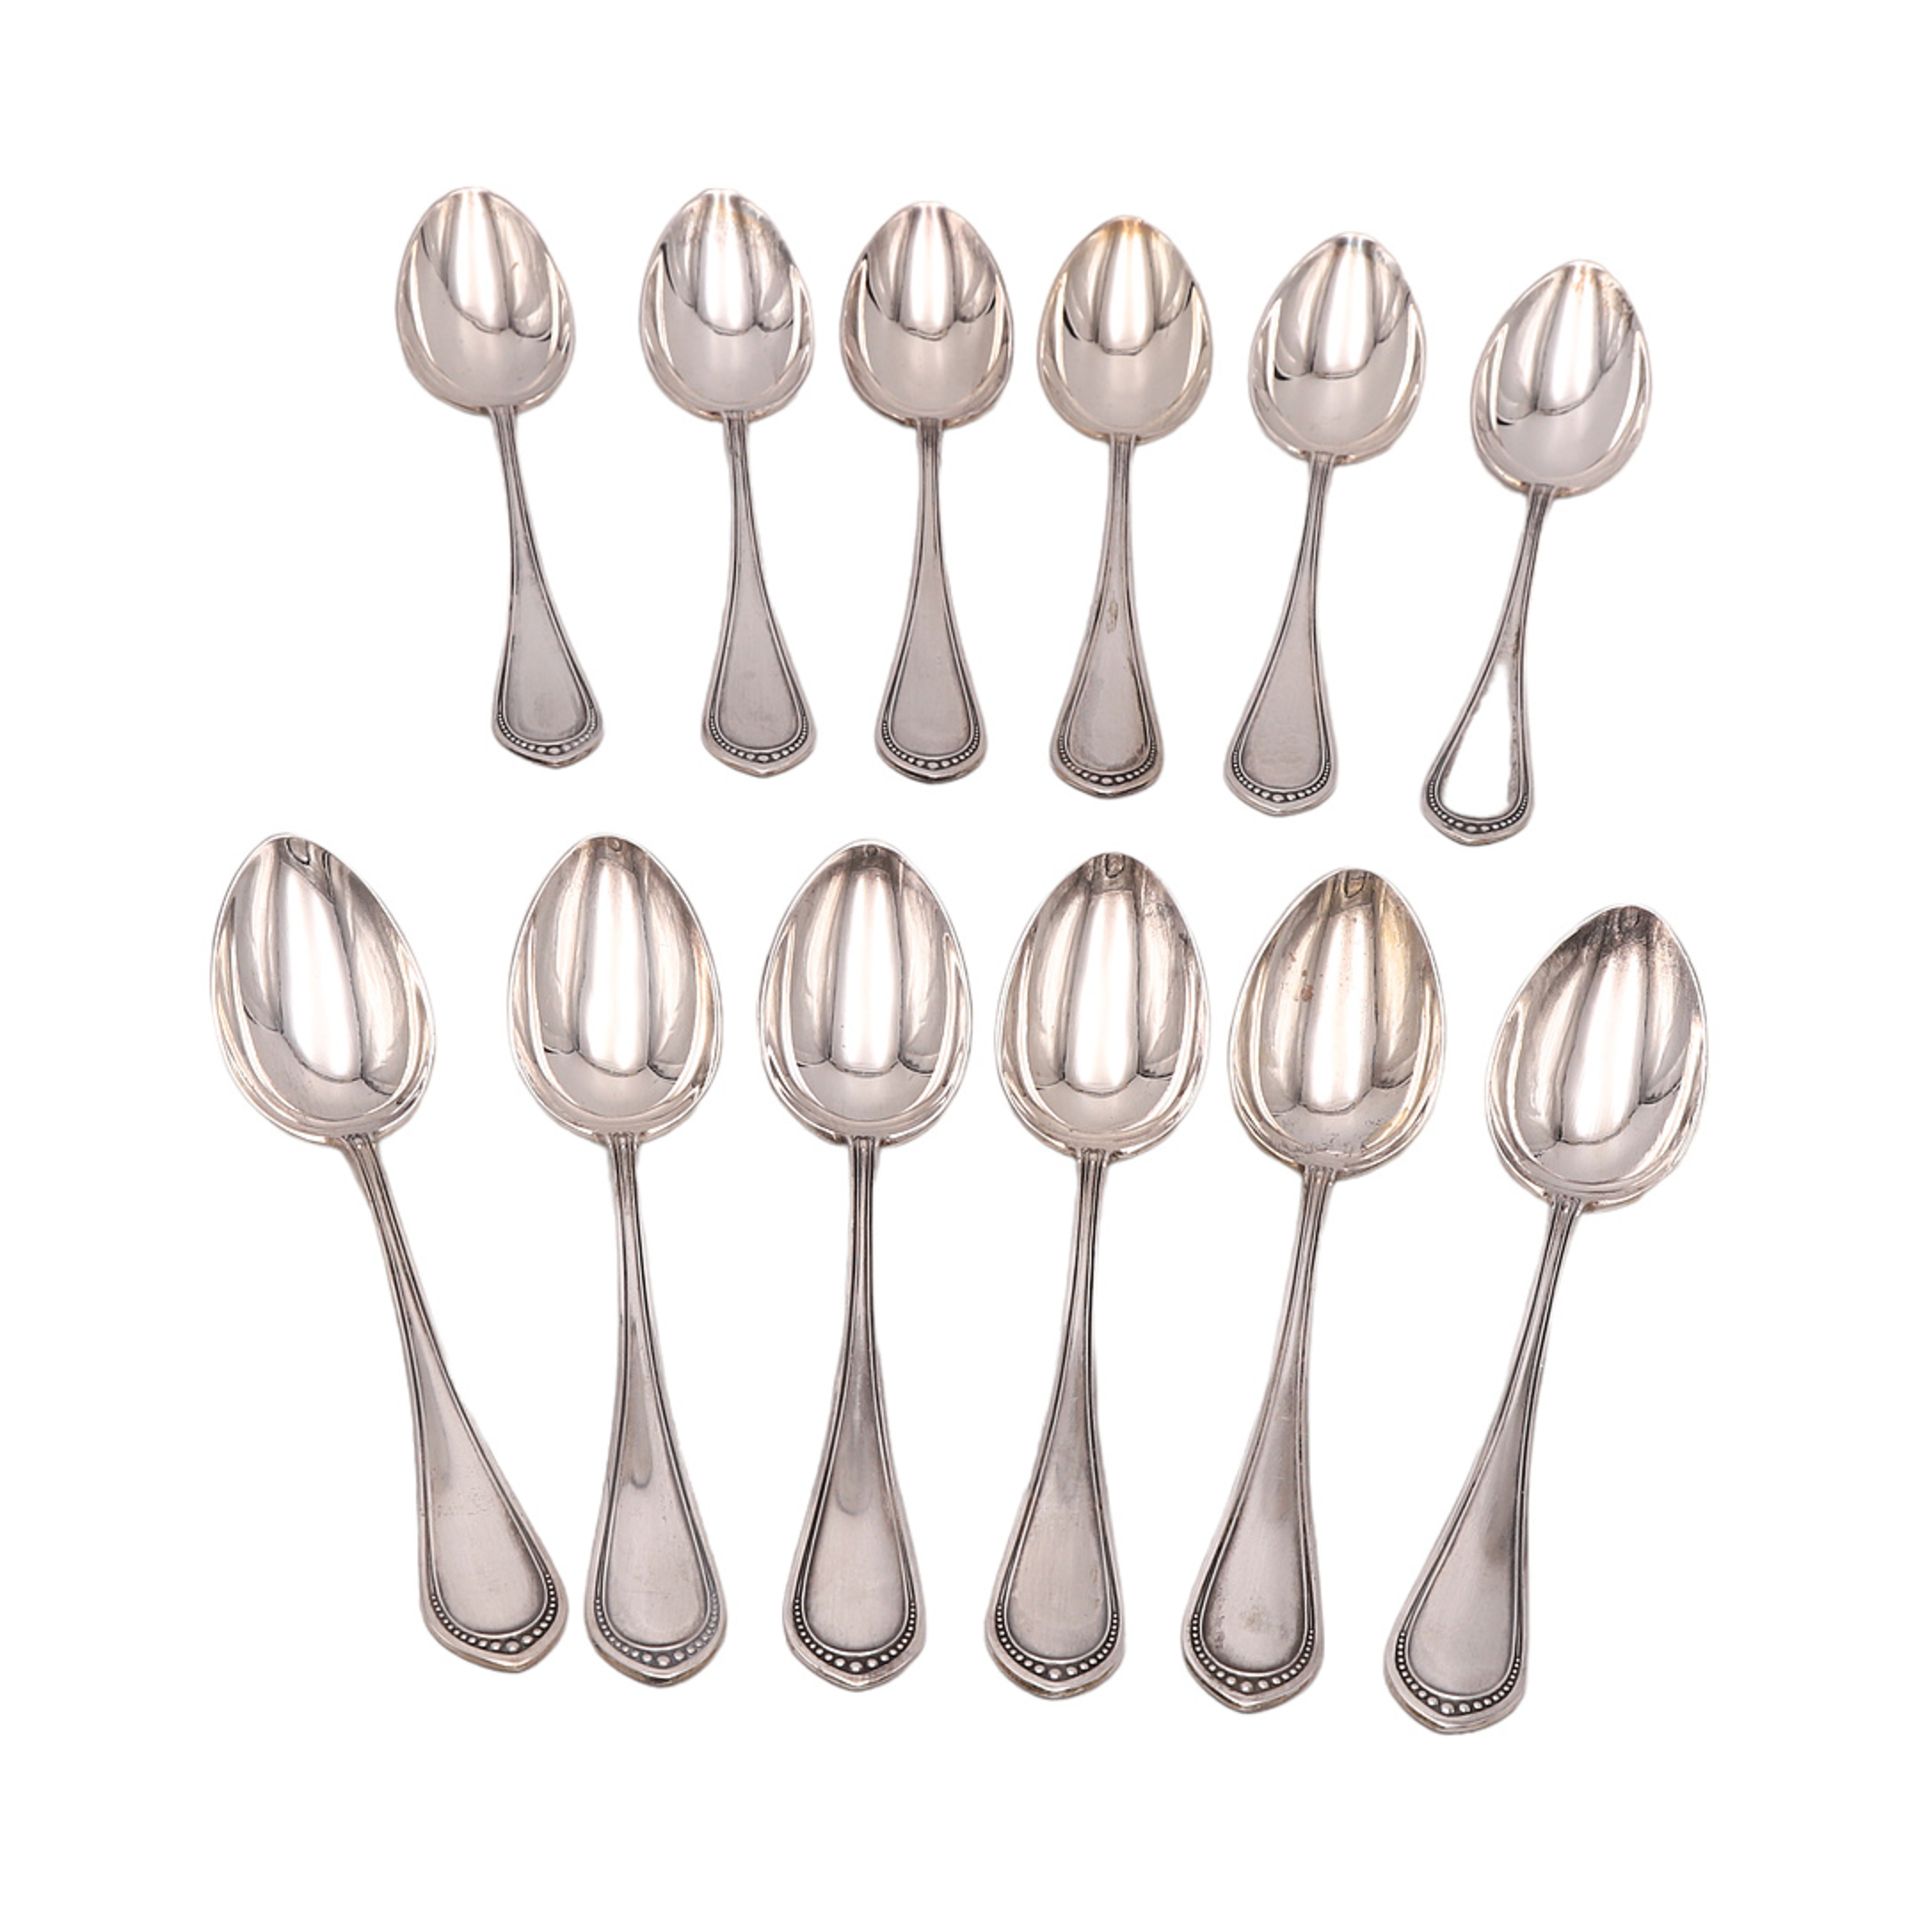 12 coffee spoons, Switzerland, around 1950 - Image 2 of 2